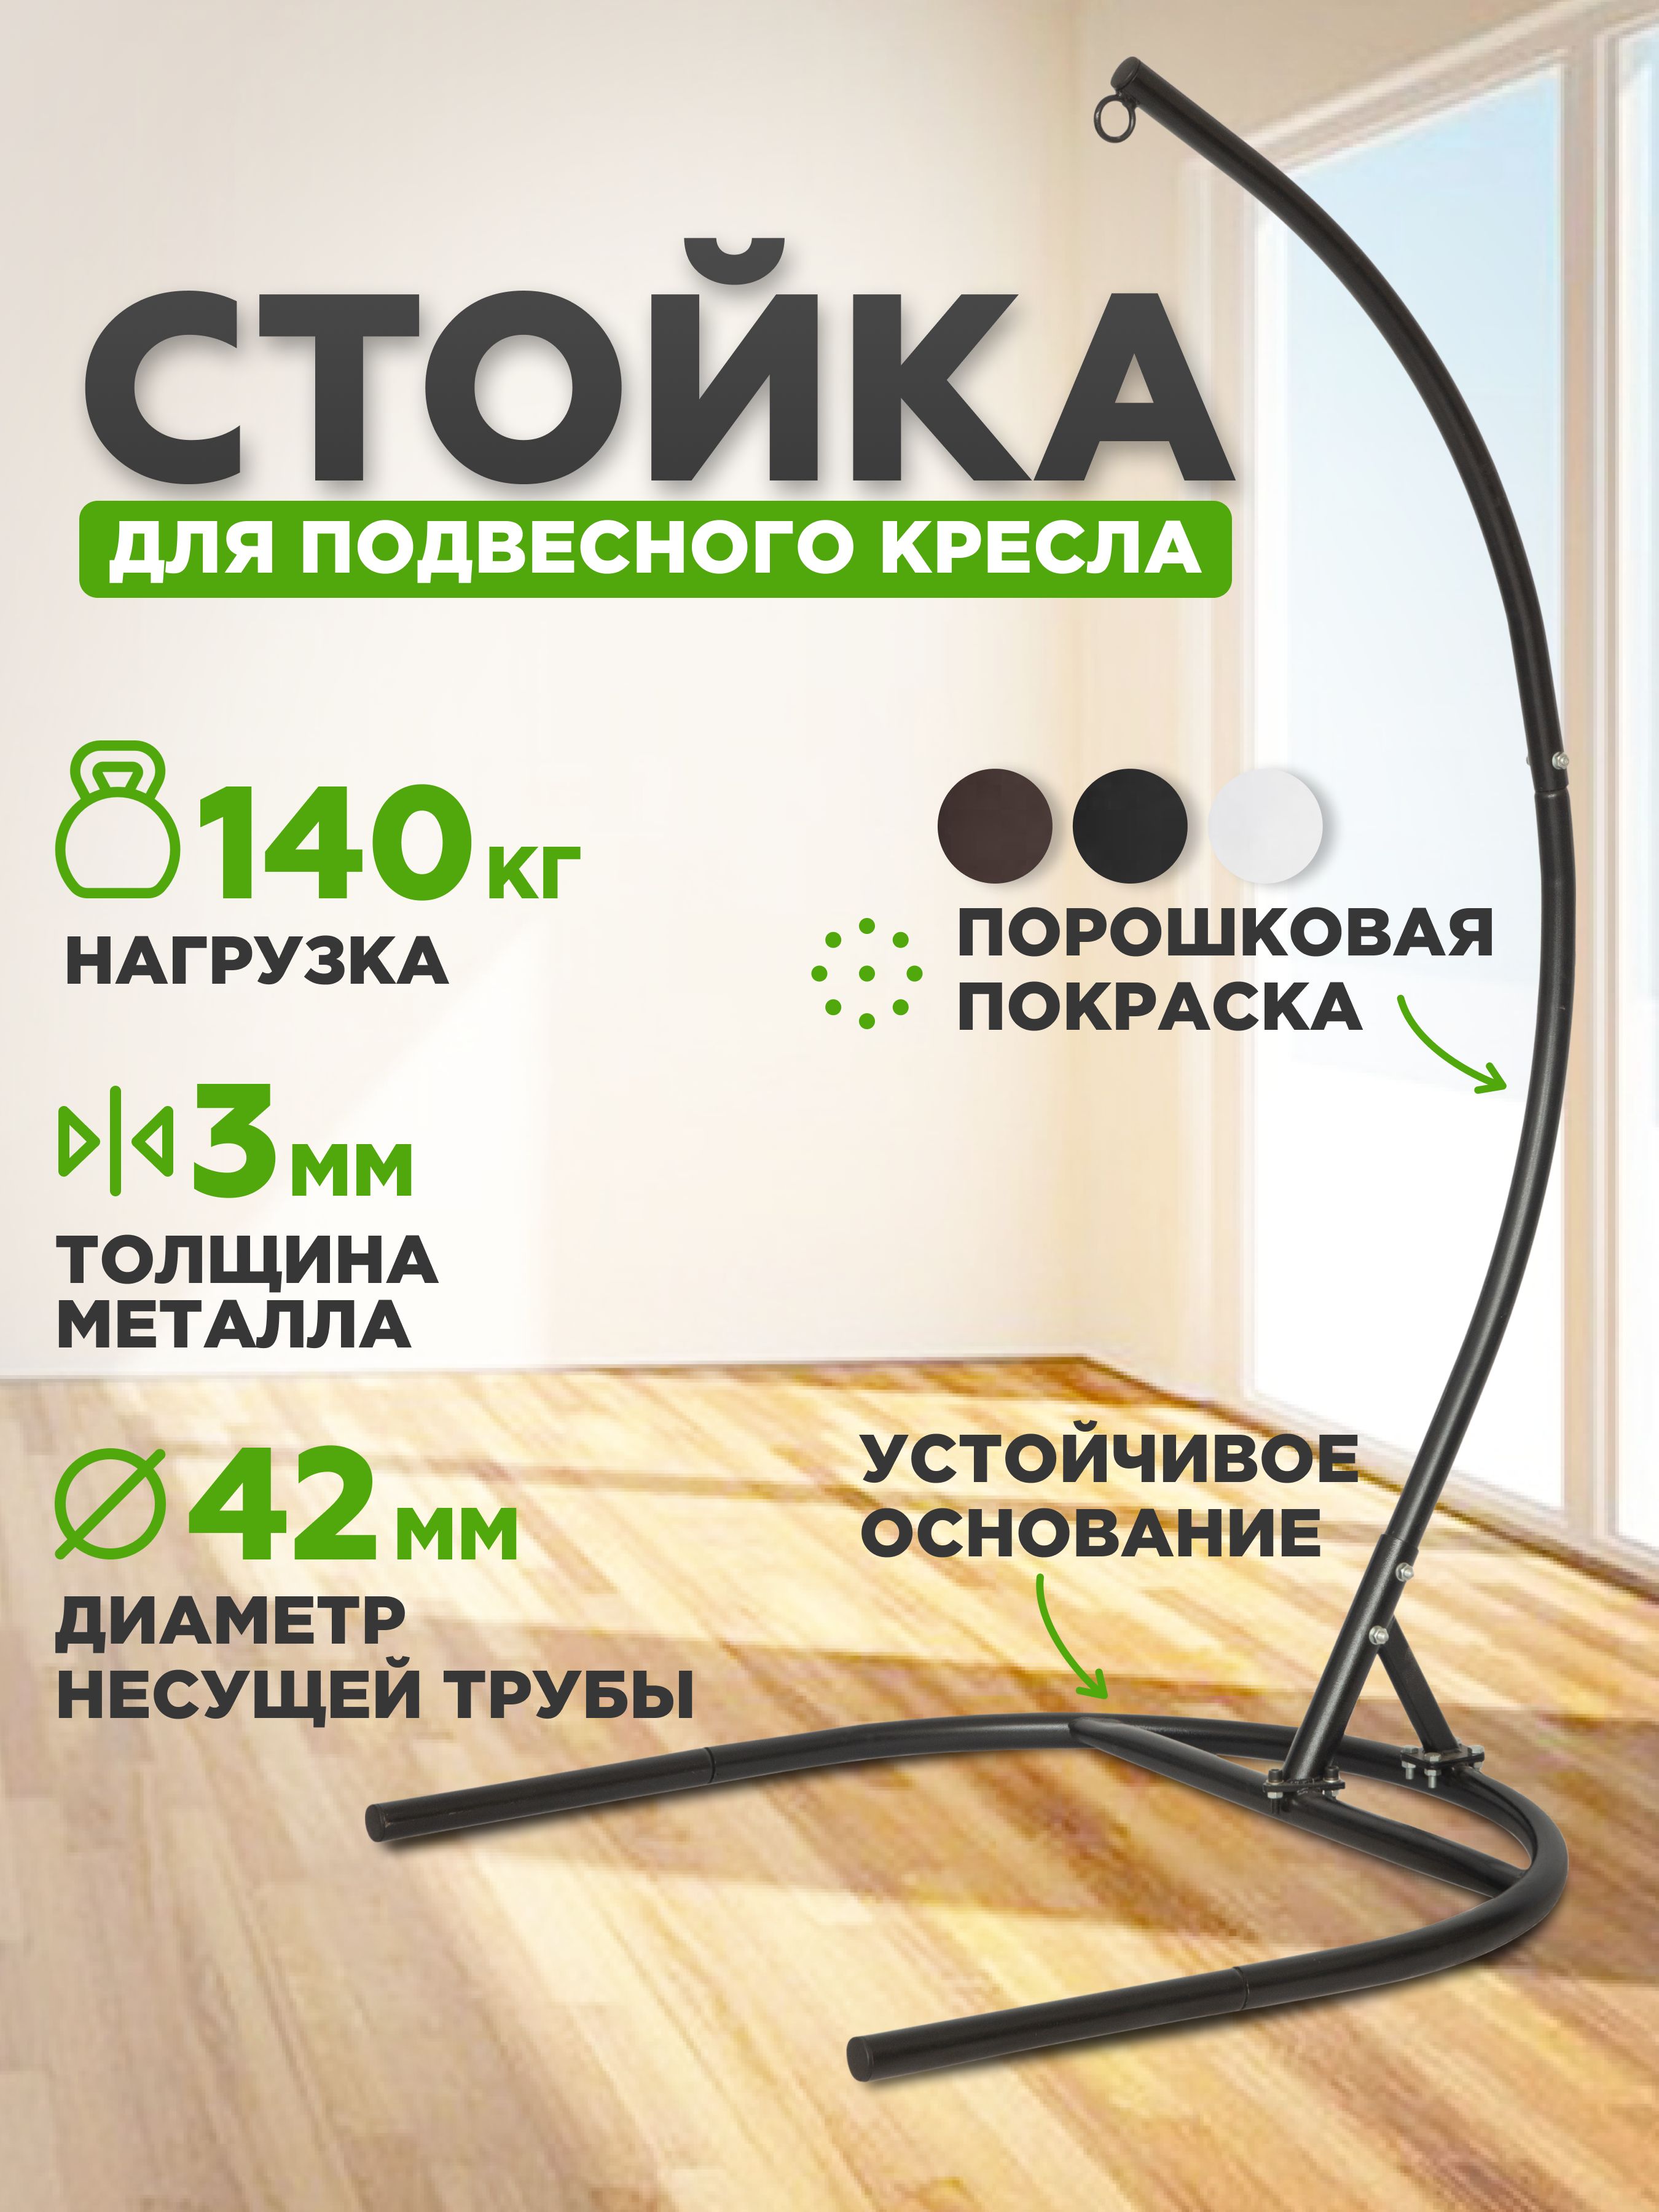 Стойка для подвесного кресла Lytton - купить по цене руб. в Москве и РФ